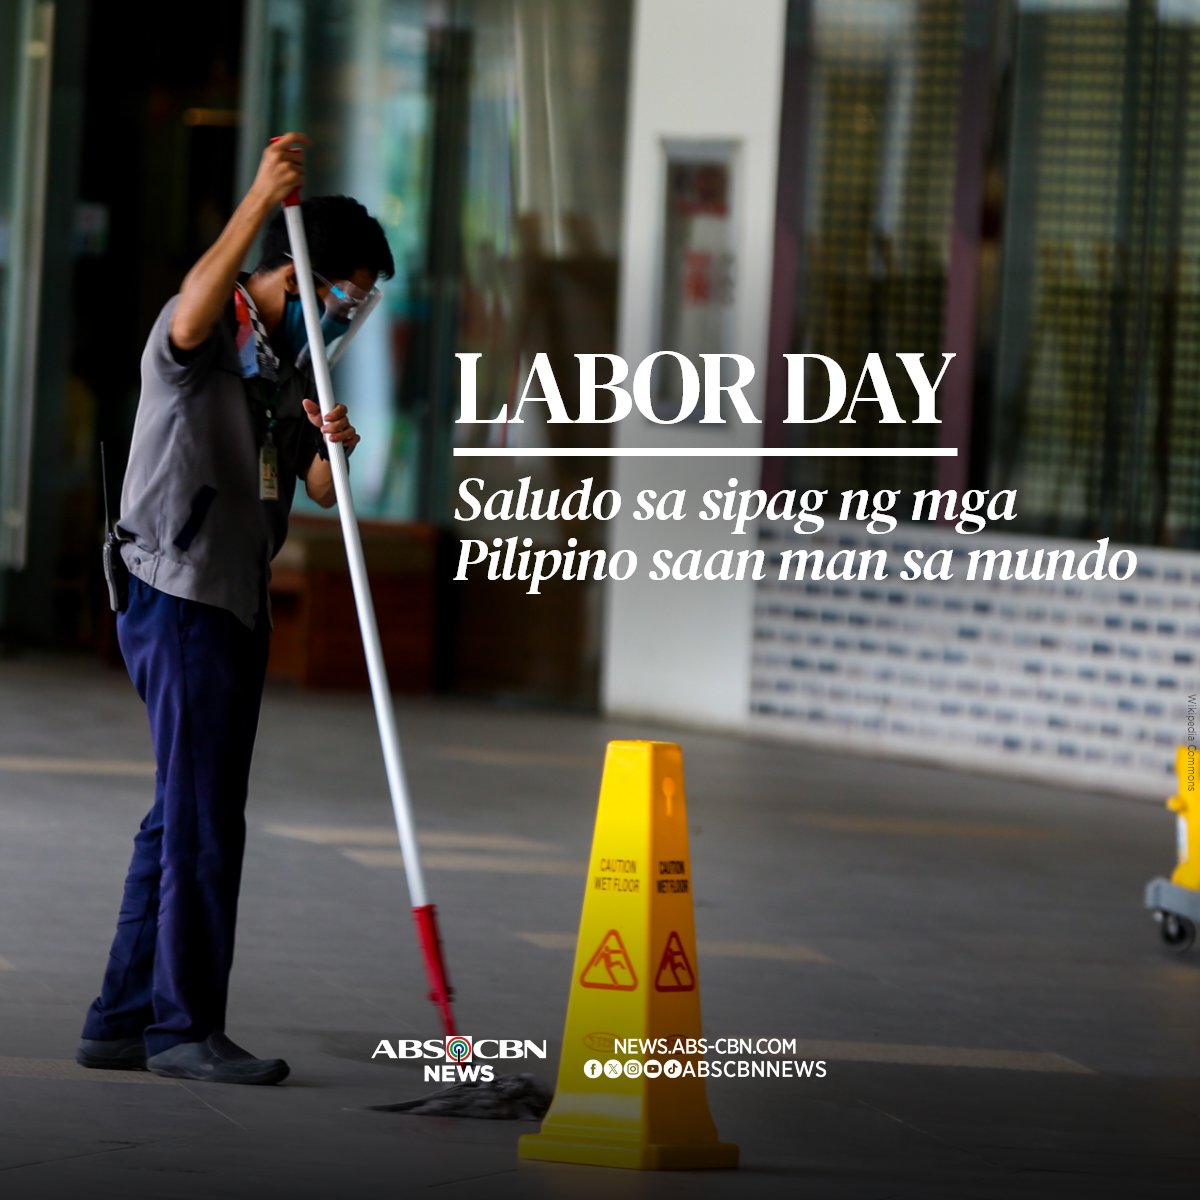 Ngayong Labor Day, patuloy nating ipanalo ang karapatan ng mga manggagawa sa bawat sulok ng mundo.